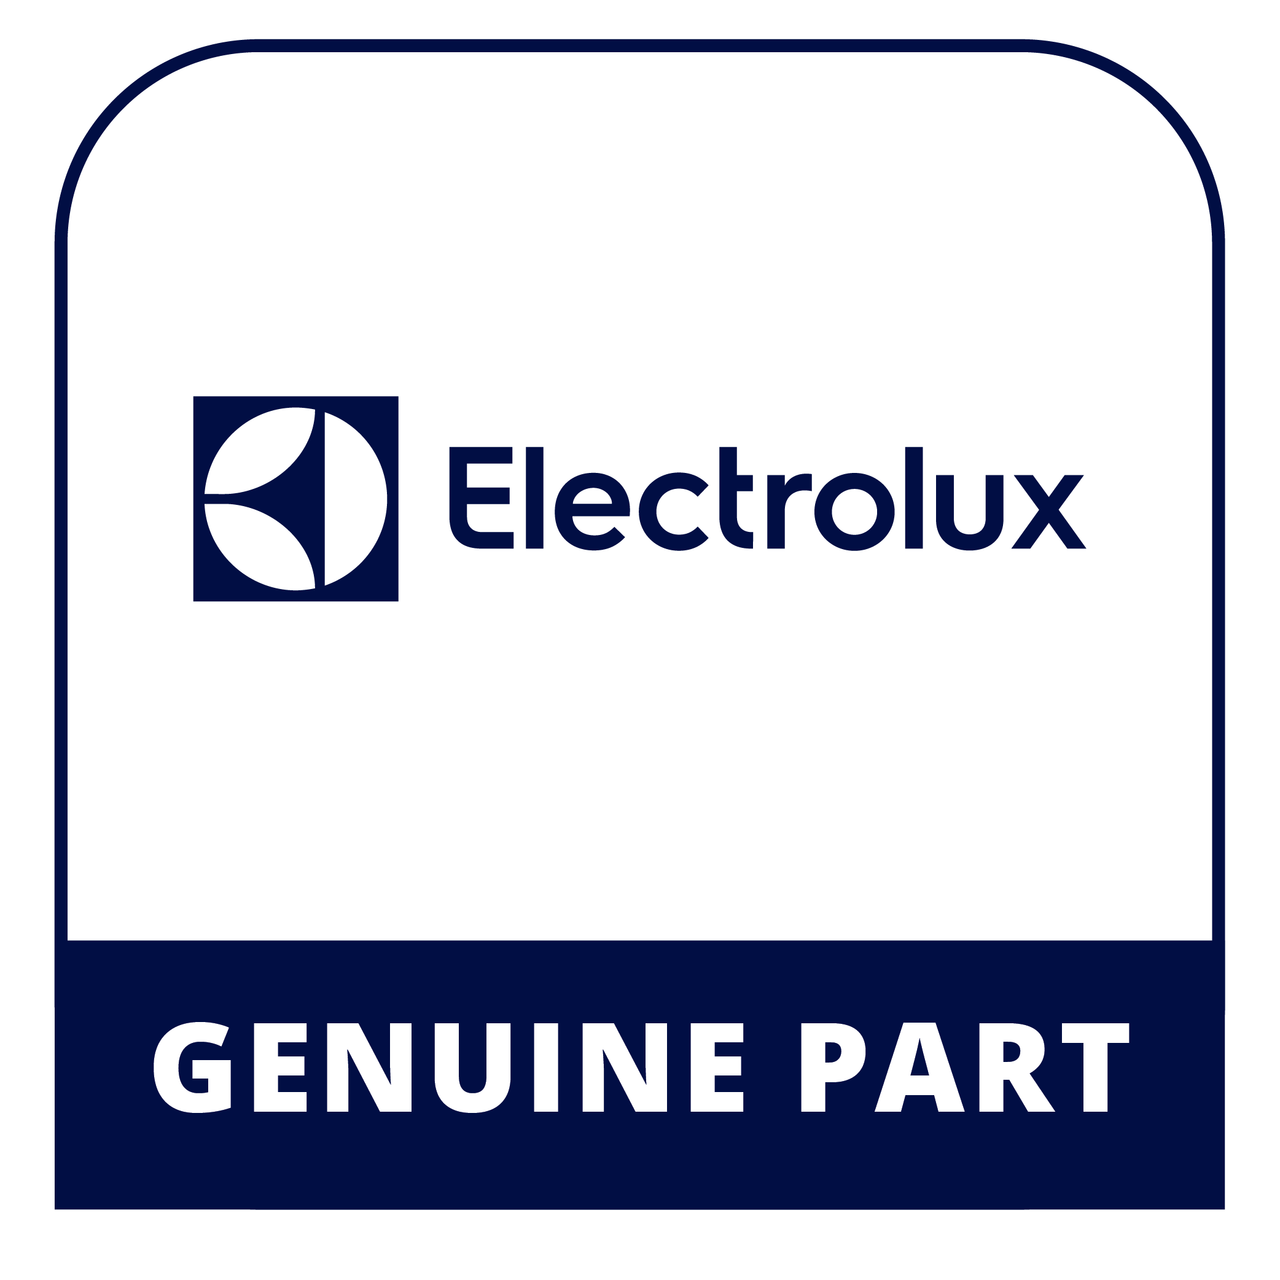 Frigidaire - Electrolux 316436000 - Switch - Genuine Electrolux Part